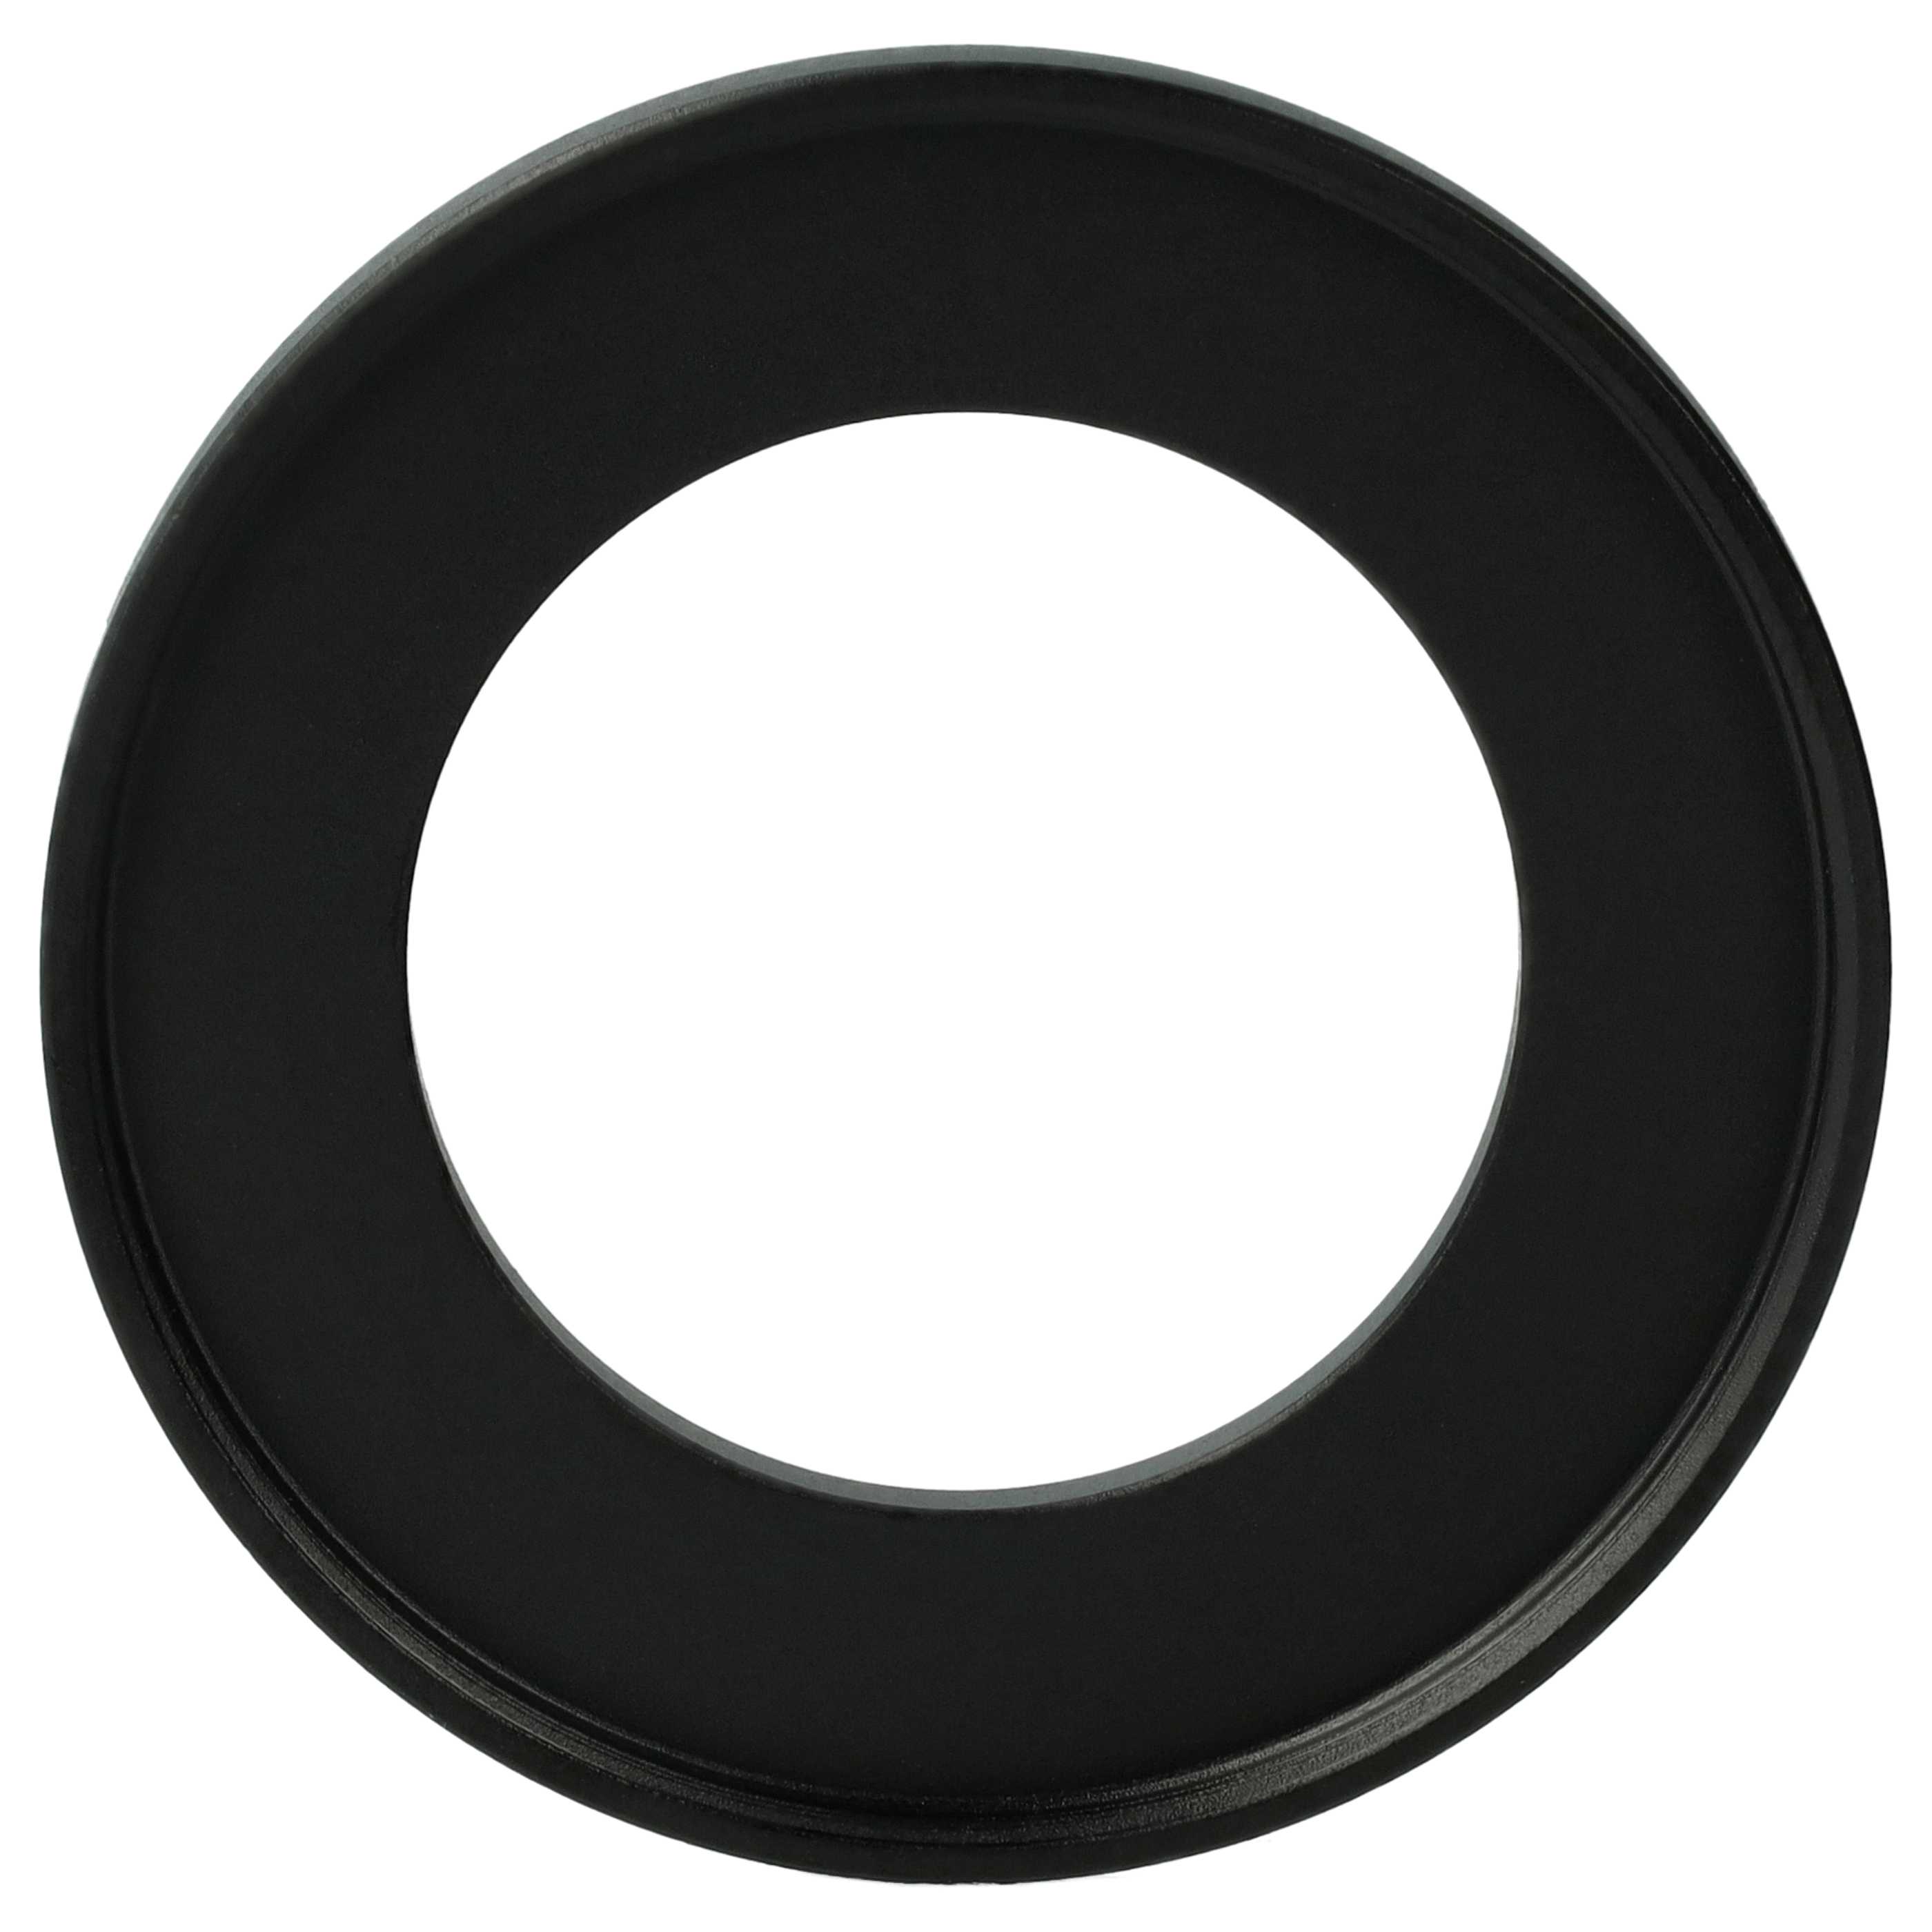 Redukcja filtrowa adapter 34 mm na 49 mm na różne obiektywy 